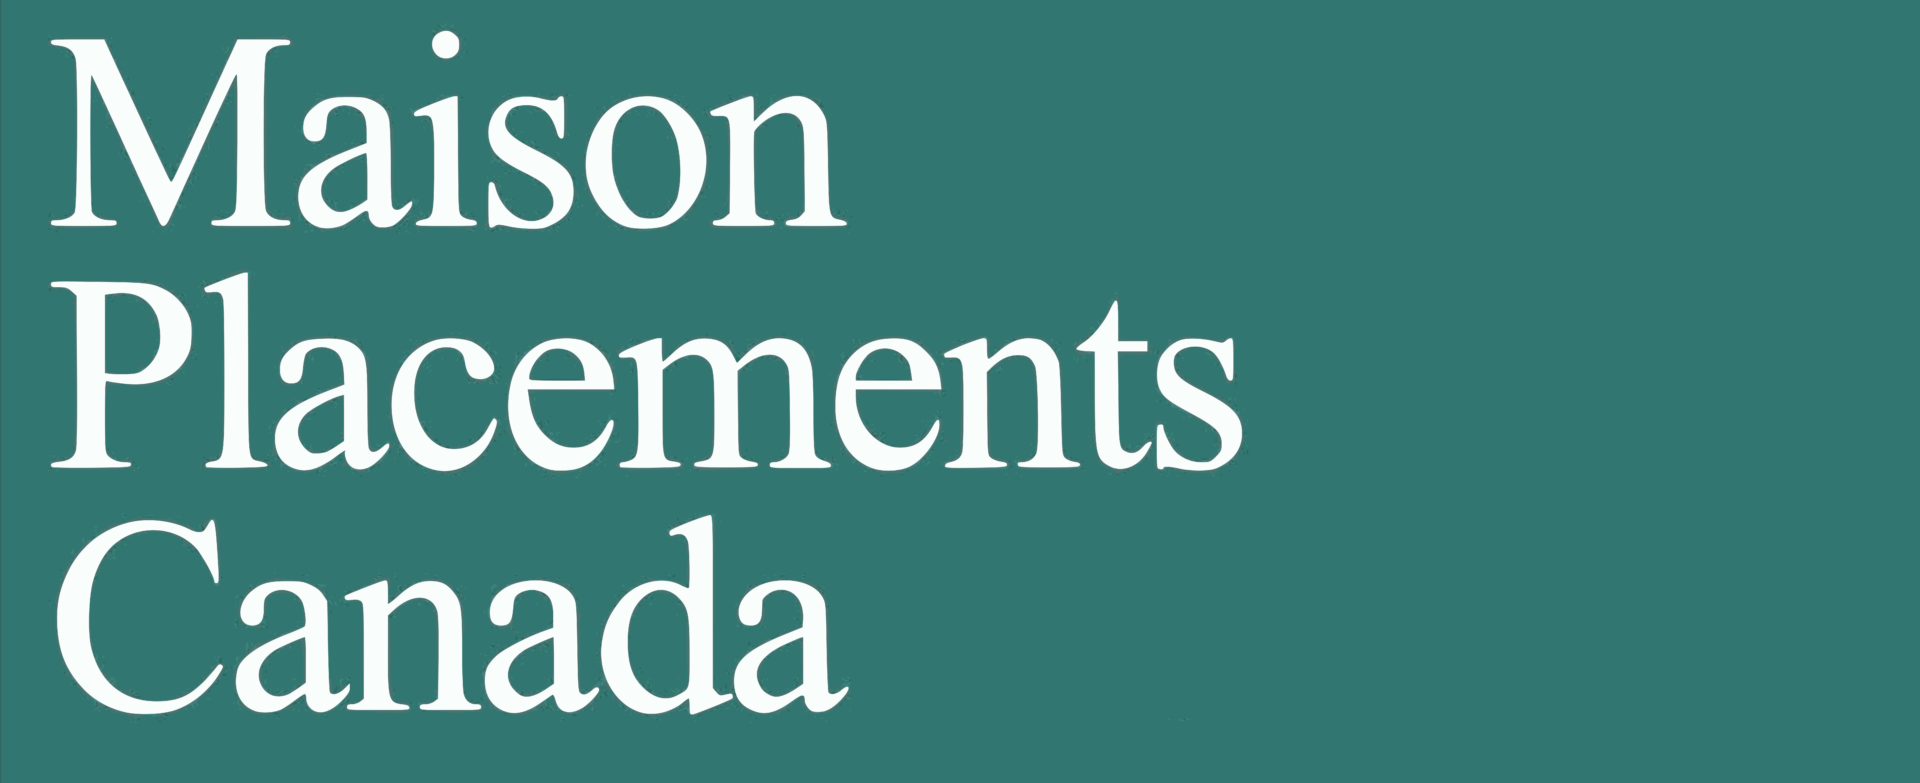 Maison Placements Canada Inc.